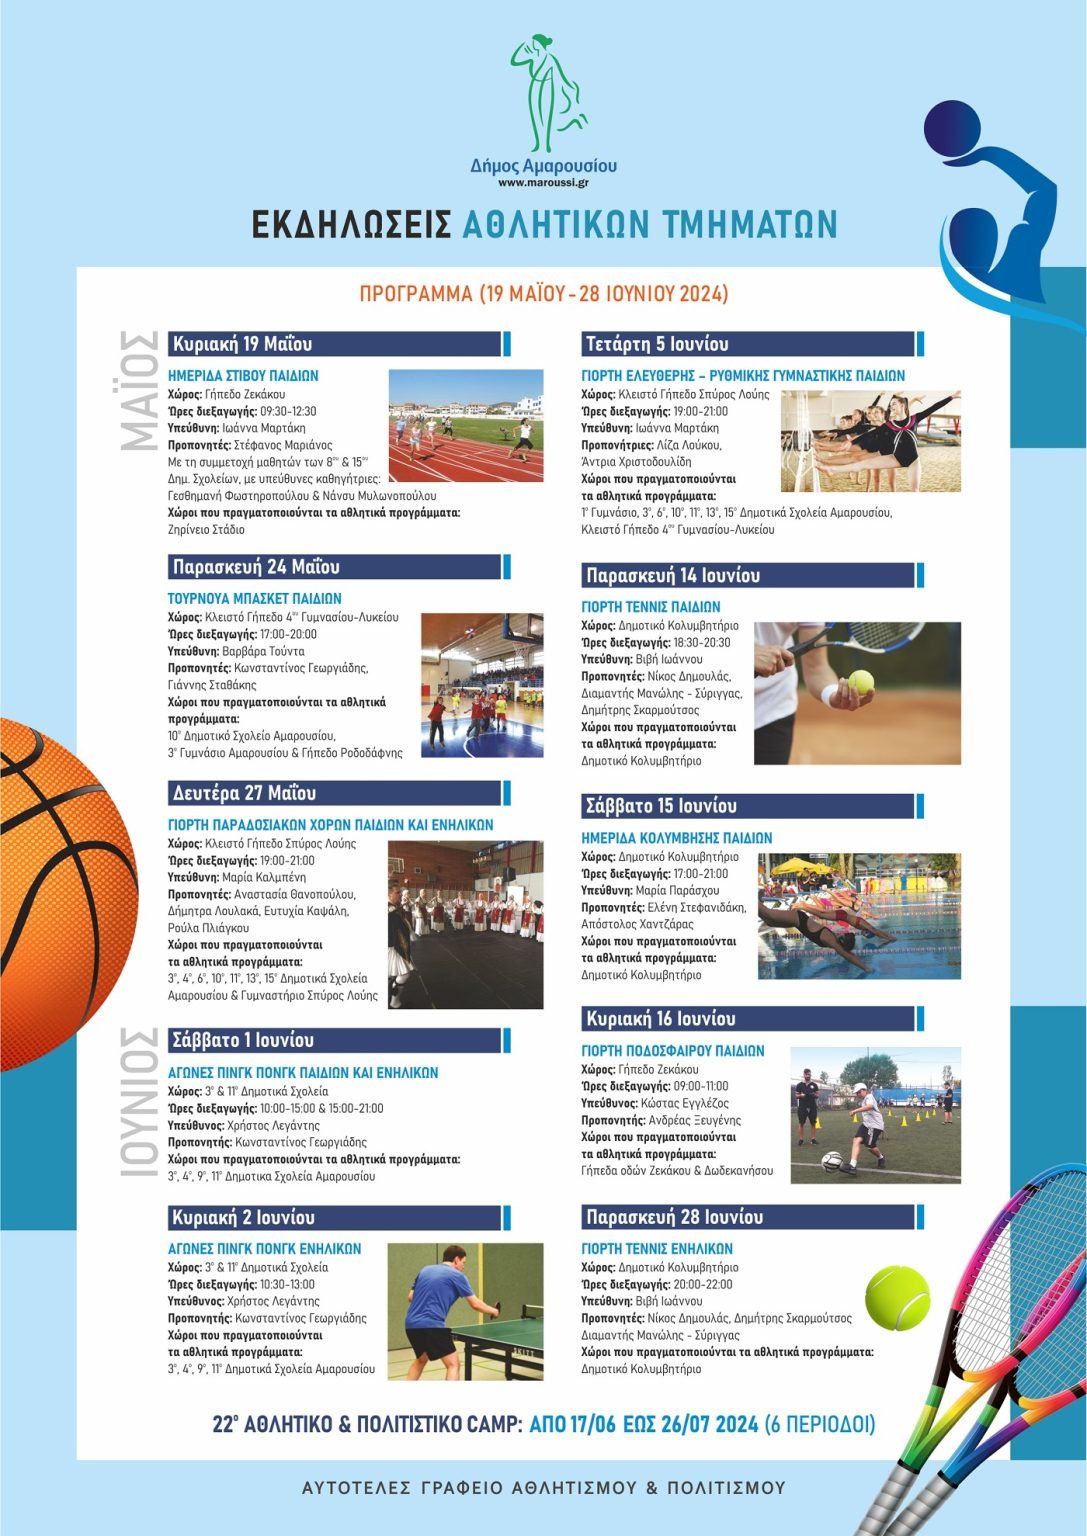 Πρόγραμμα Εκδηλώσεων Αθλητικών Τμημάτων Δήμου Αμαρουσίου, 19 Μαΐου ως 28 Ιουνίου 2024